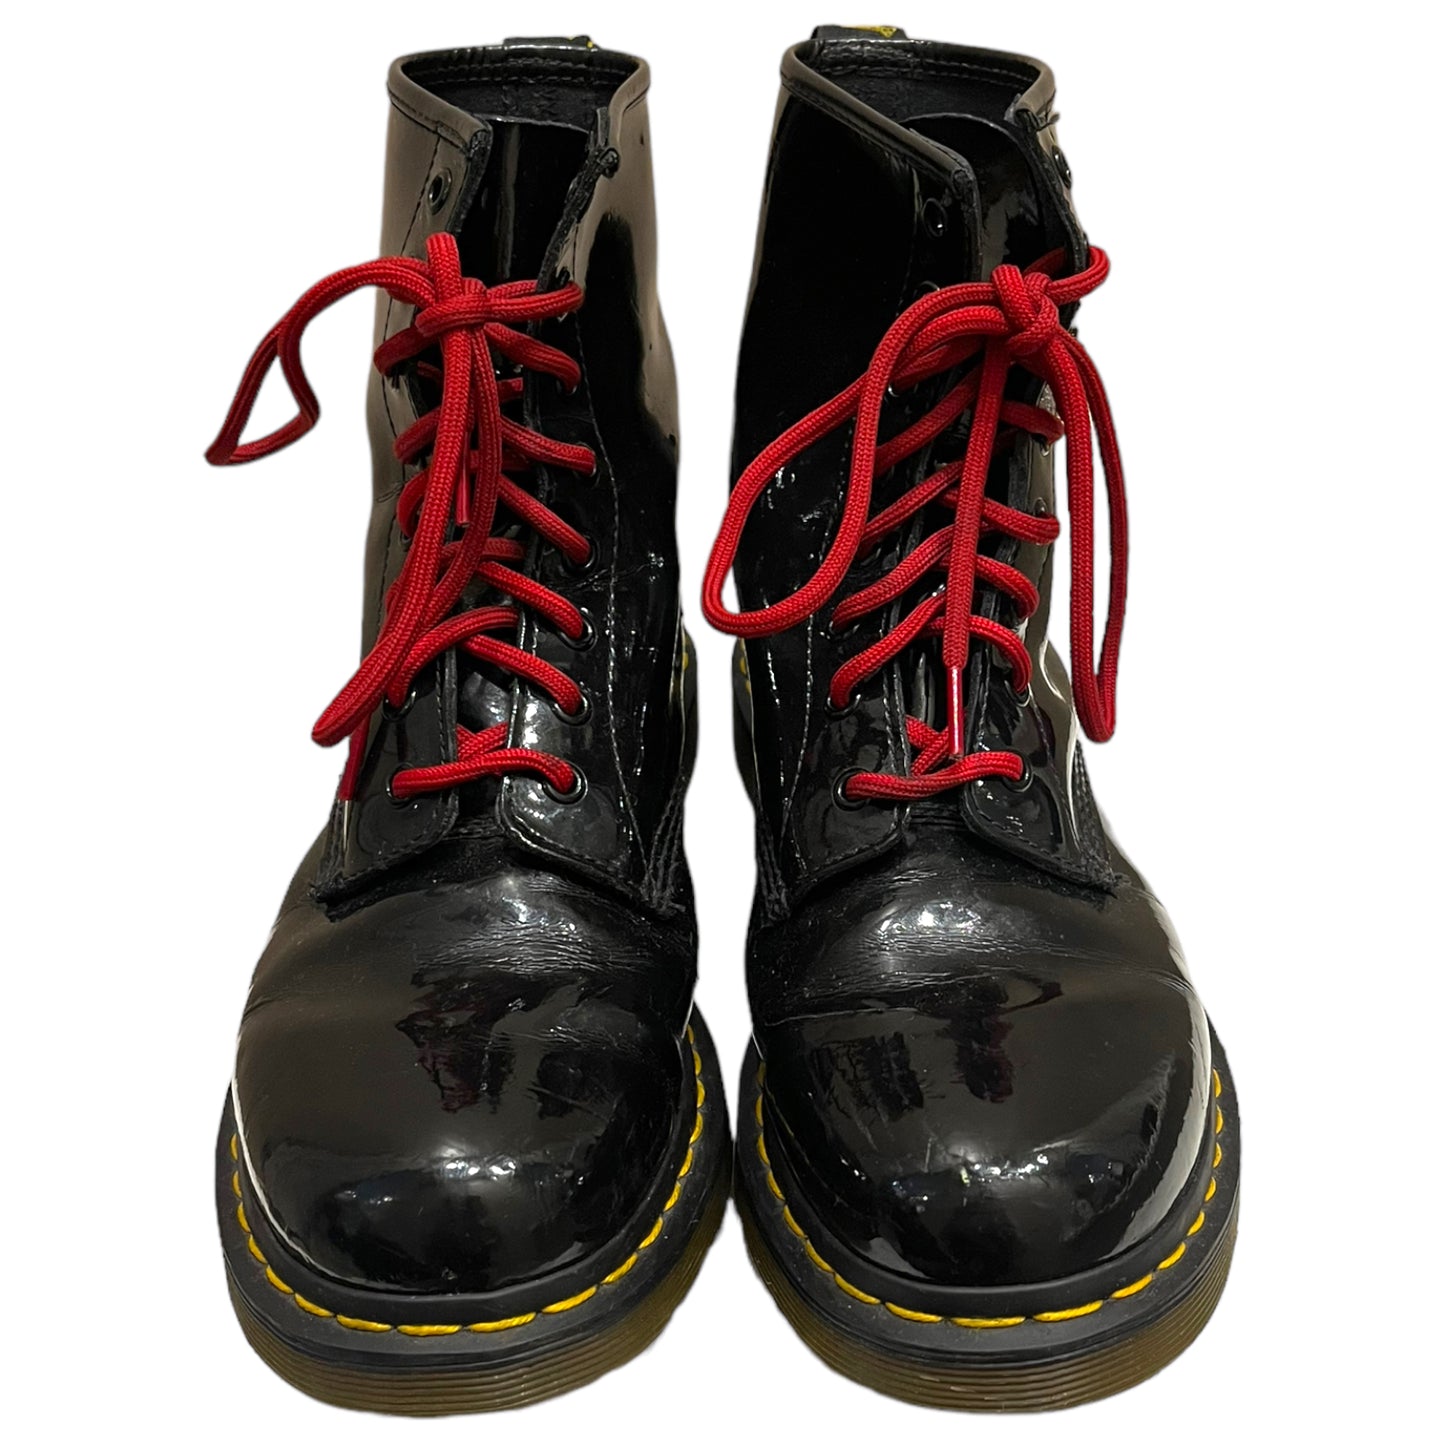 Dr Martens Black Patent Lace Up Boots